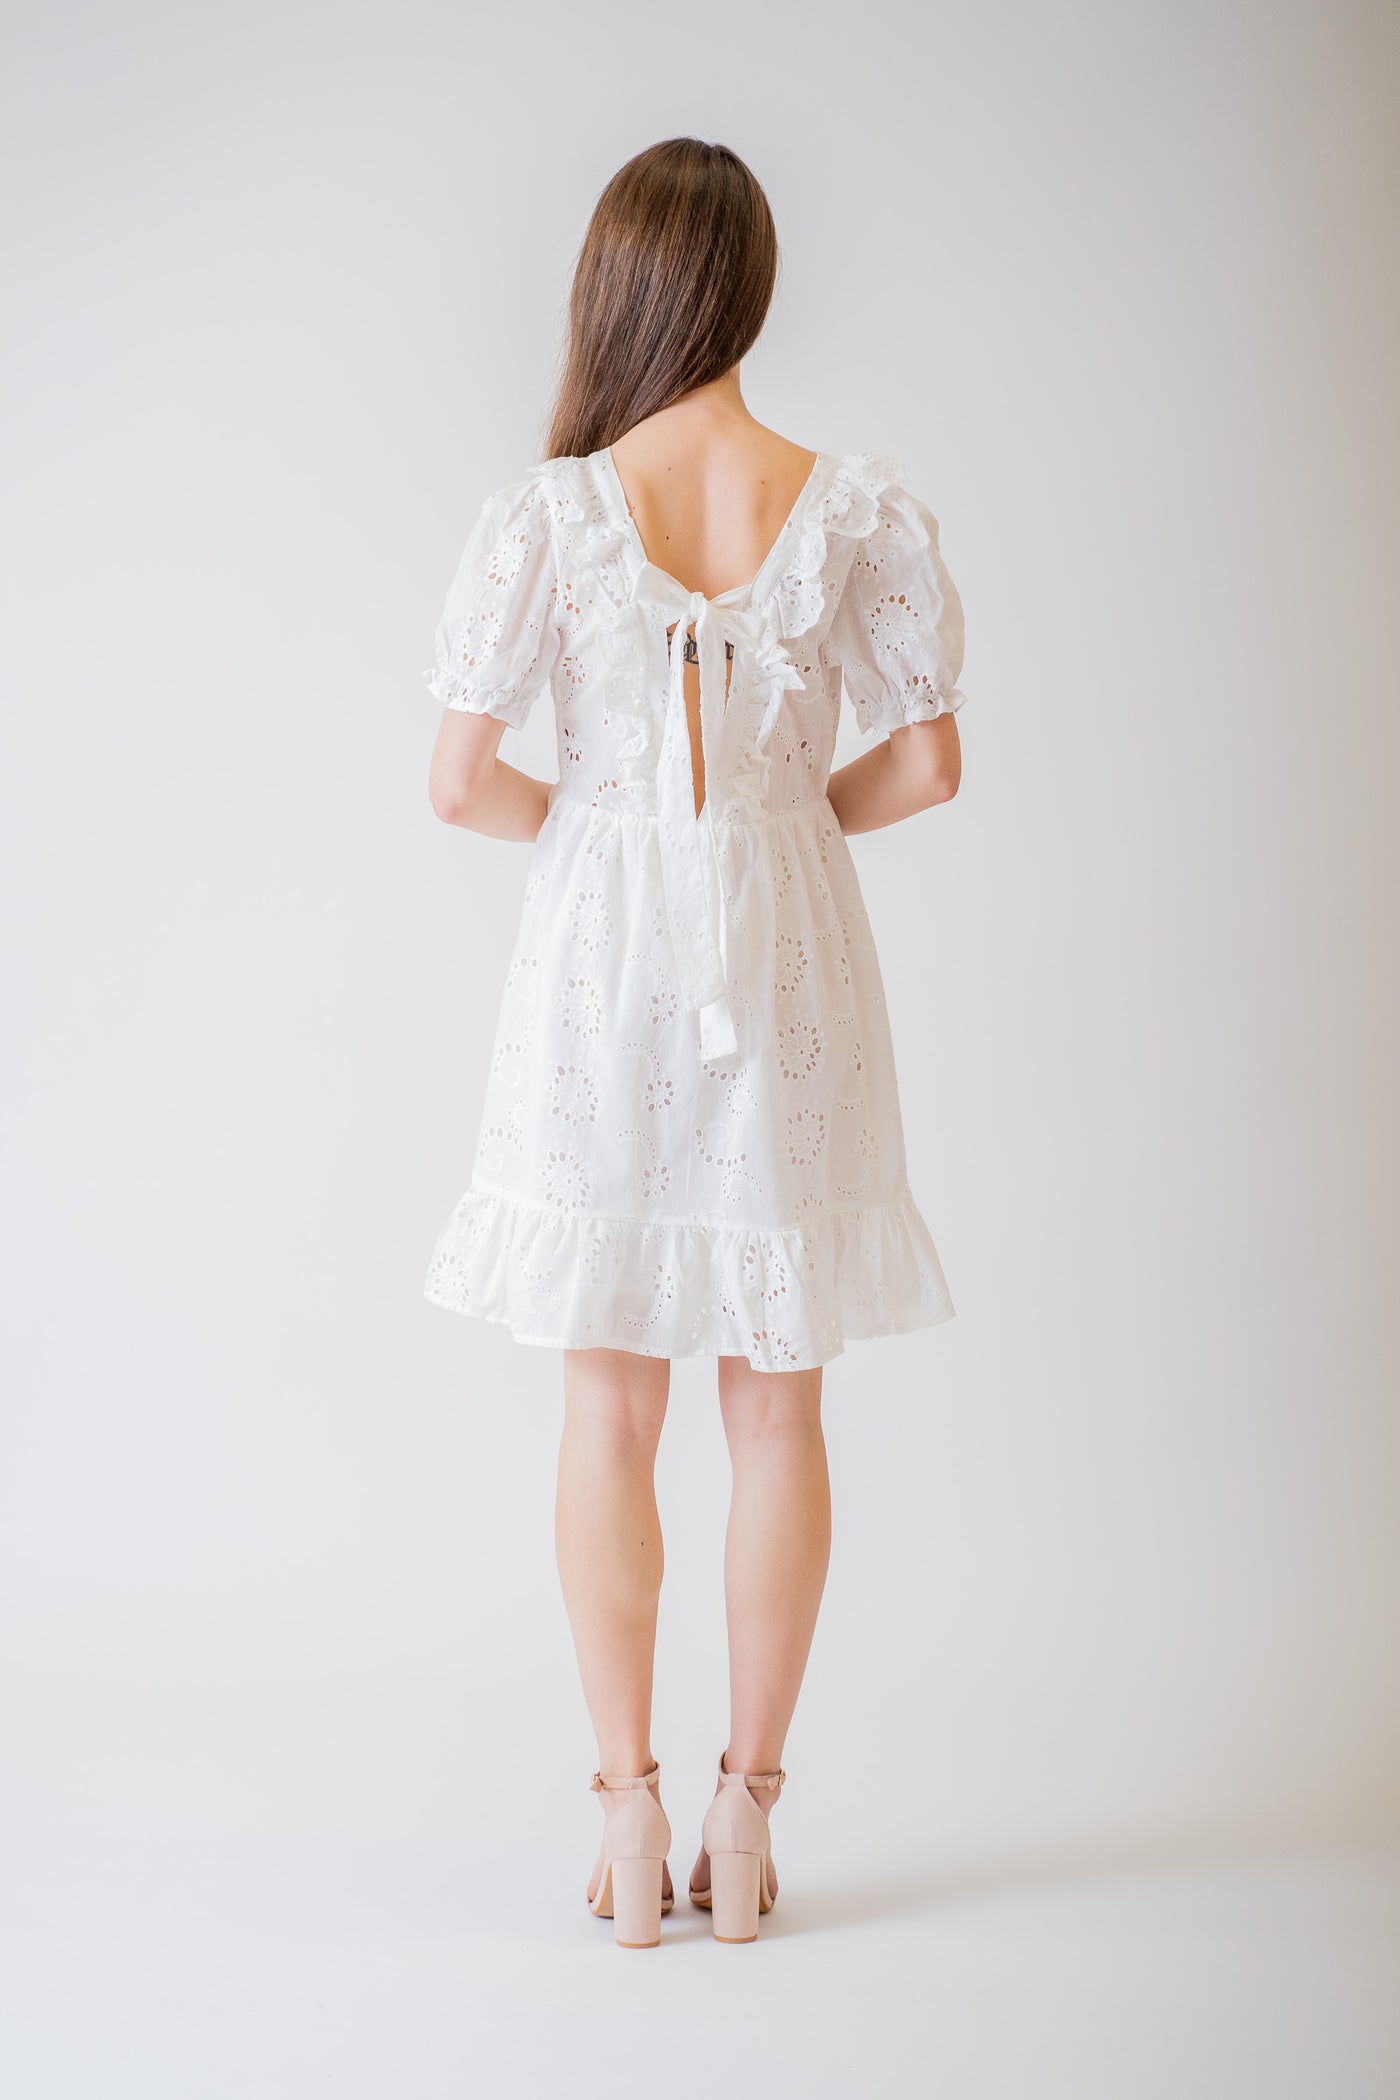 Biele madeirové šaty na viazanie - Šaty